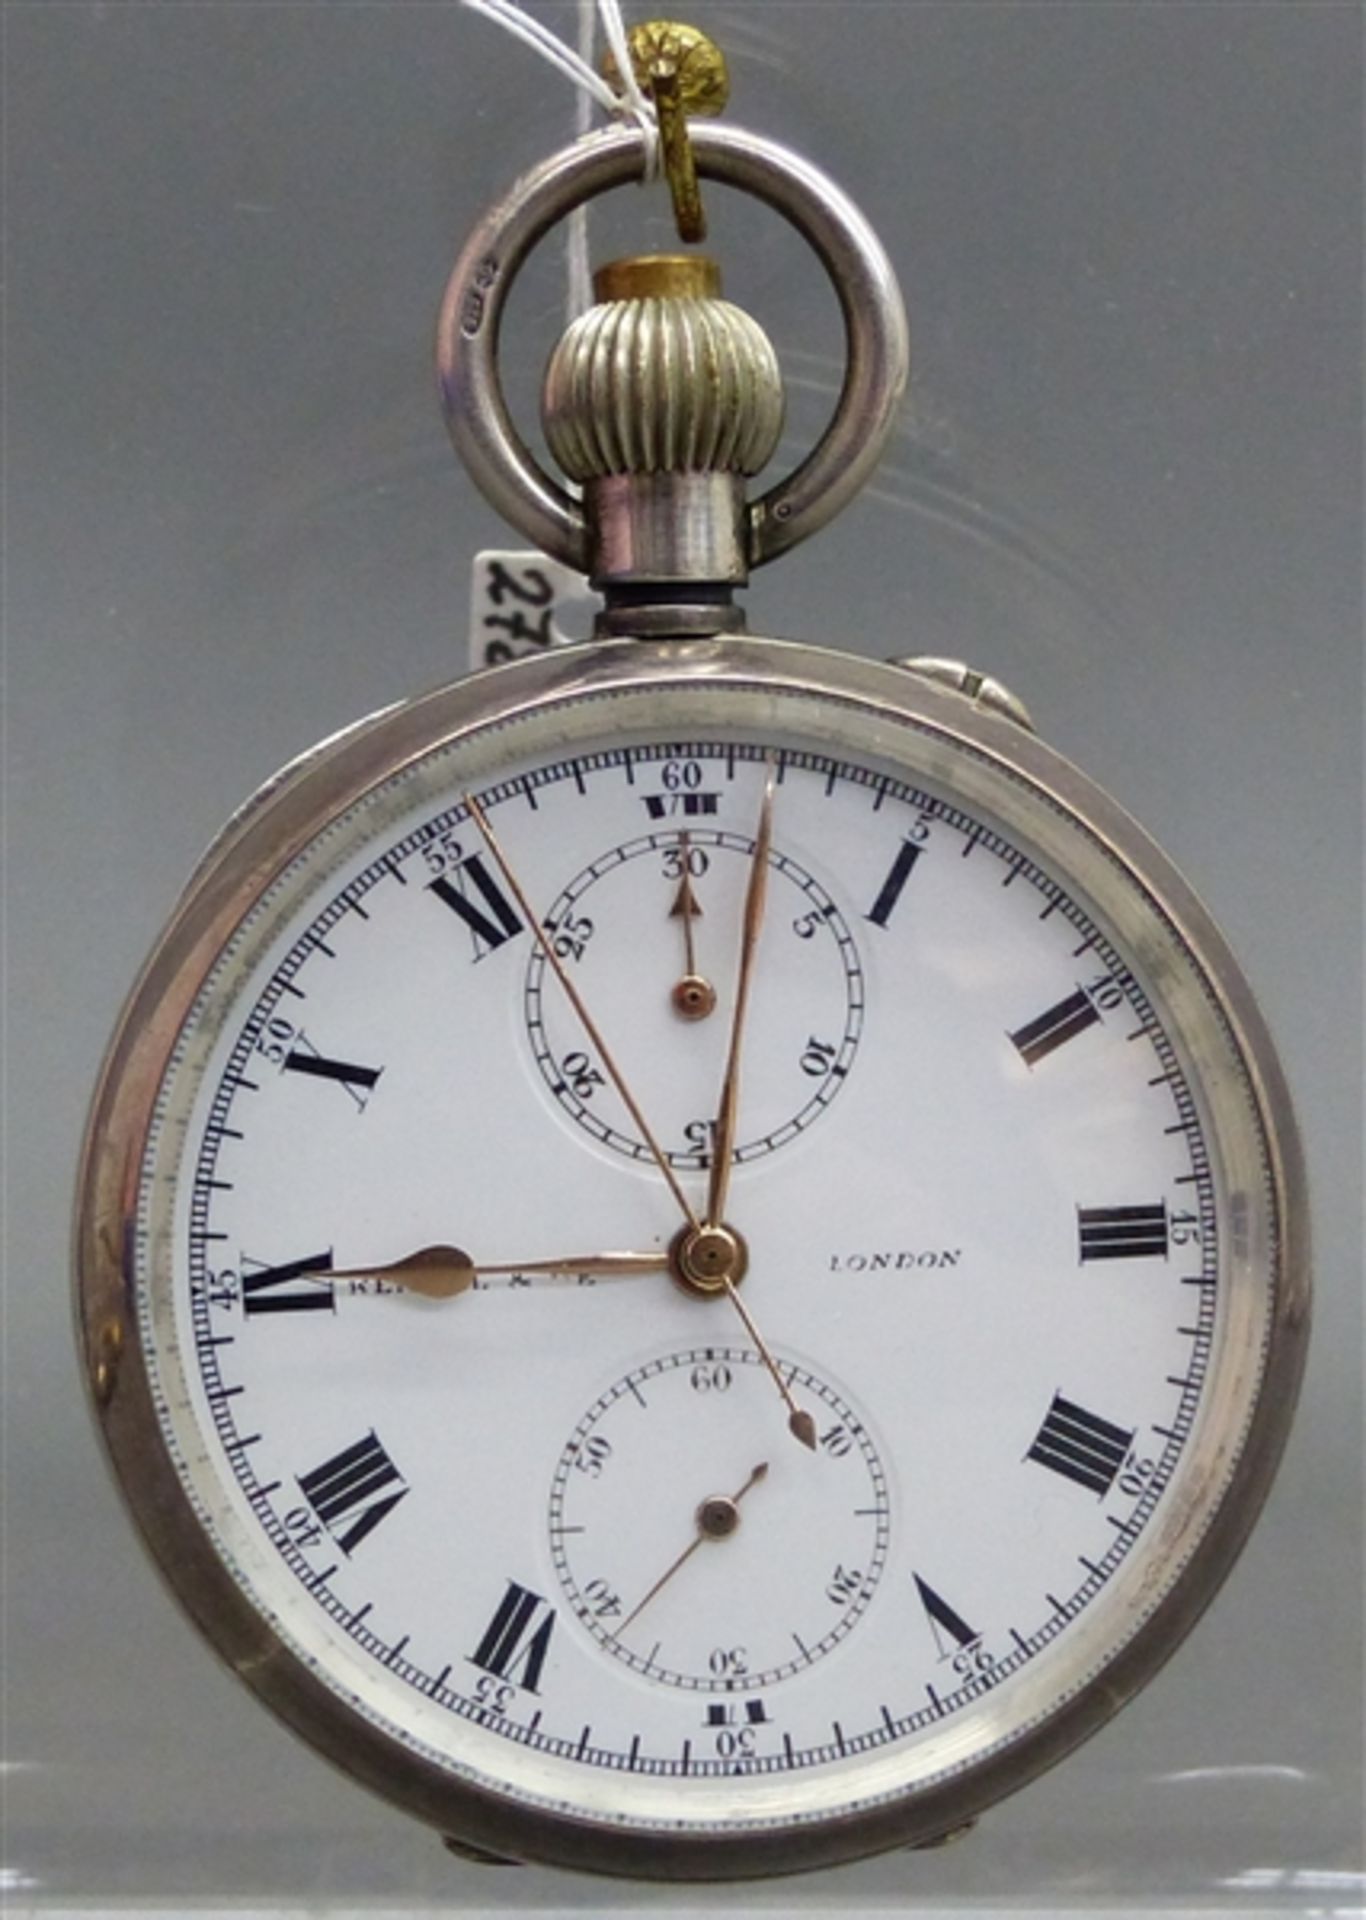 Taschenuhr mit Stopper, 925er Silbergehäuse, "Kendal London", Kronenaufzug, weißes